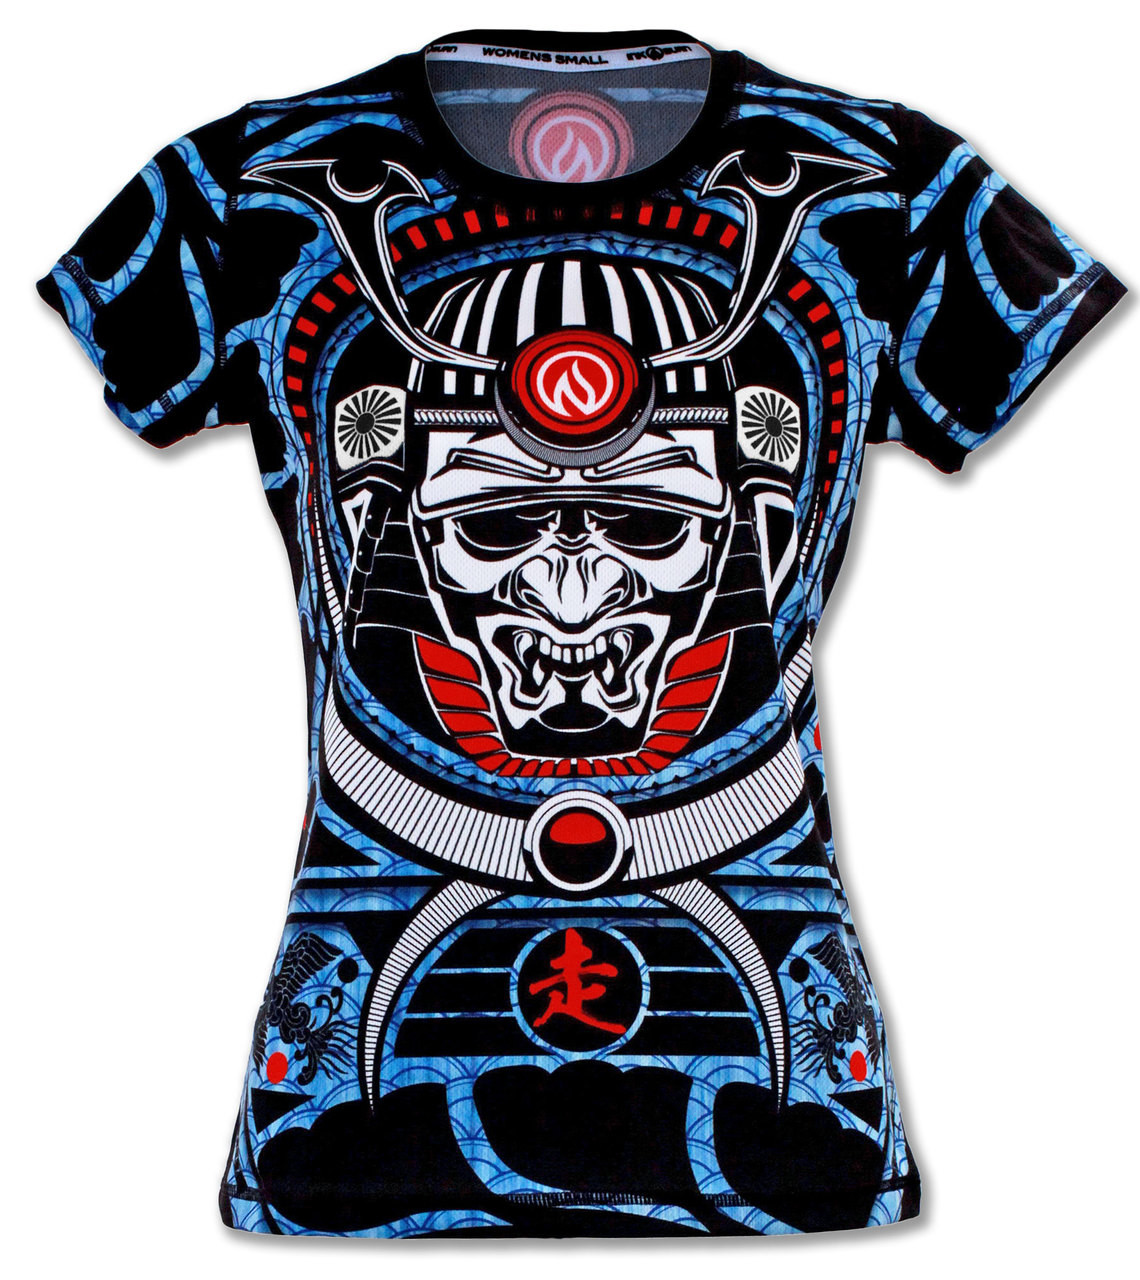 W_Samurai_Tech_Shirt_Front__14908.1447204606.1280.1280.jpg